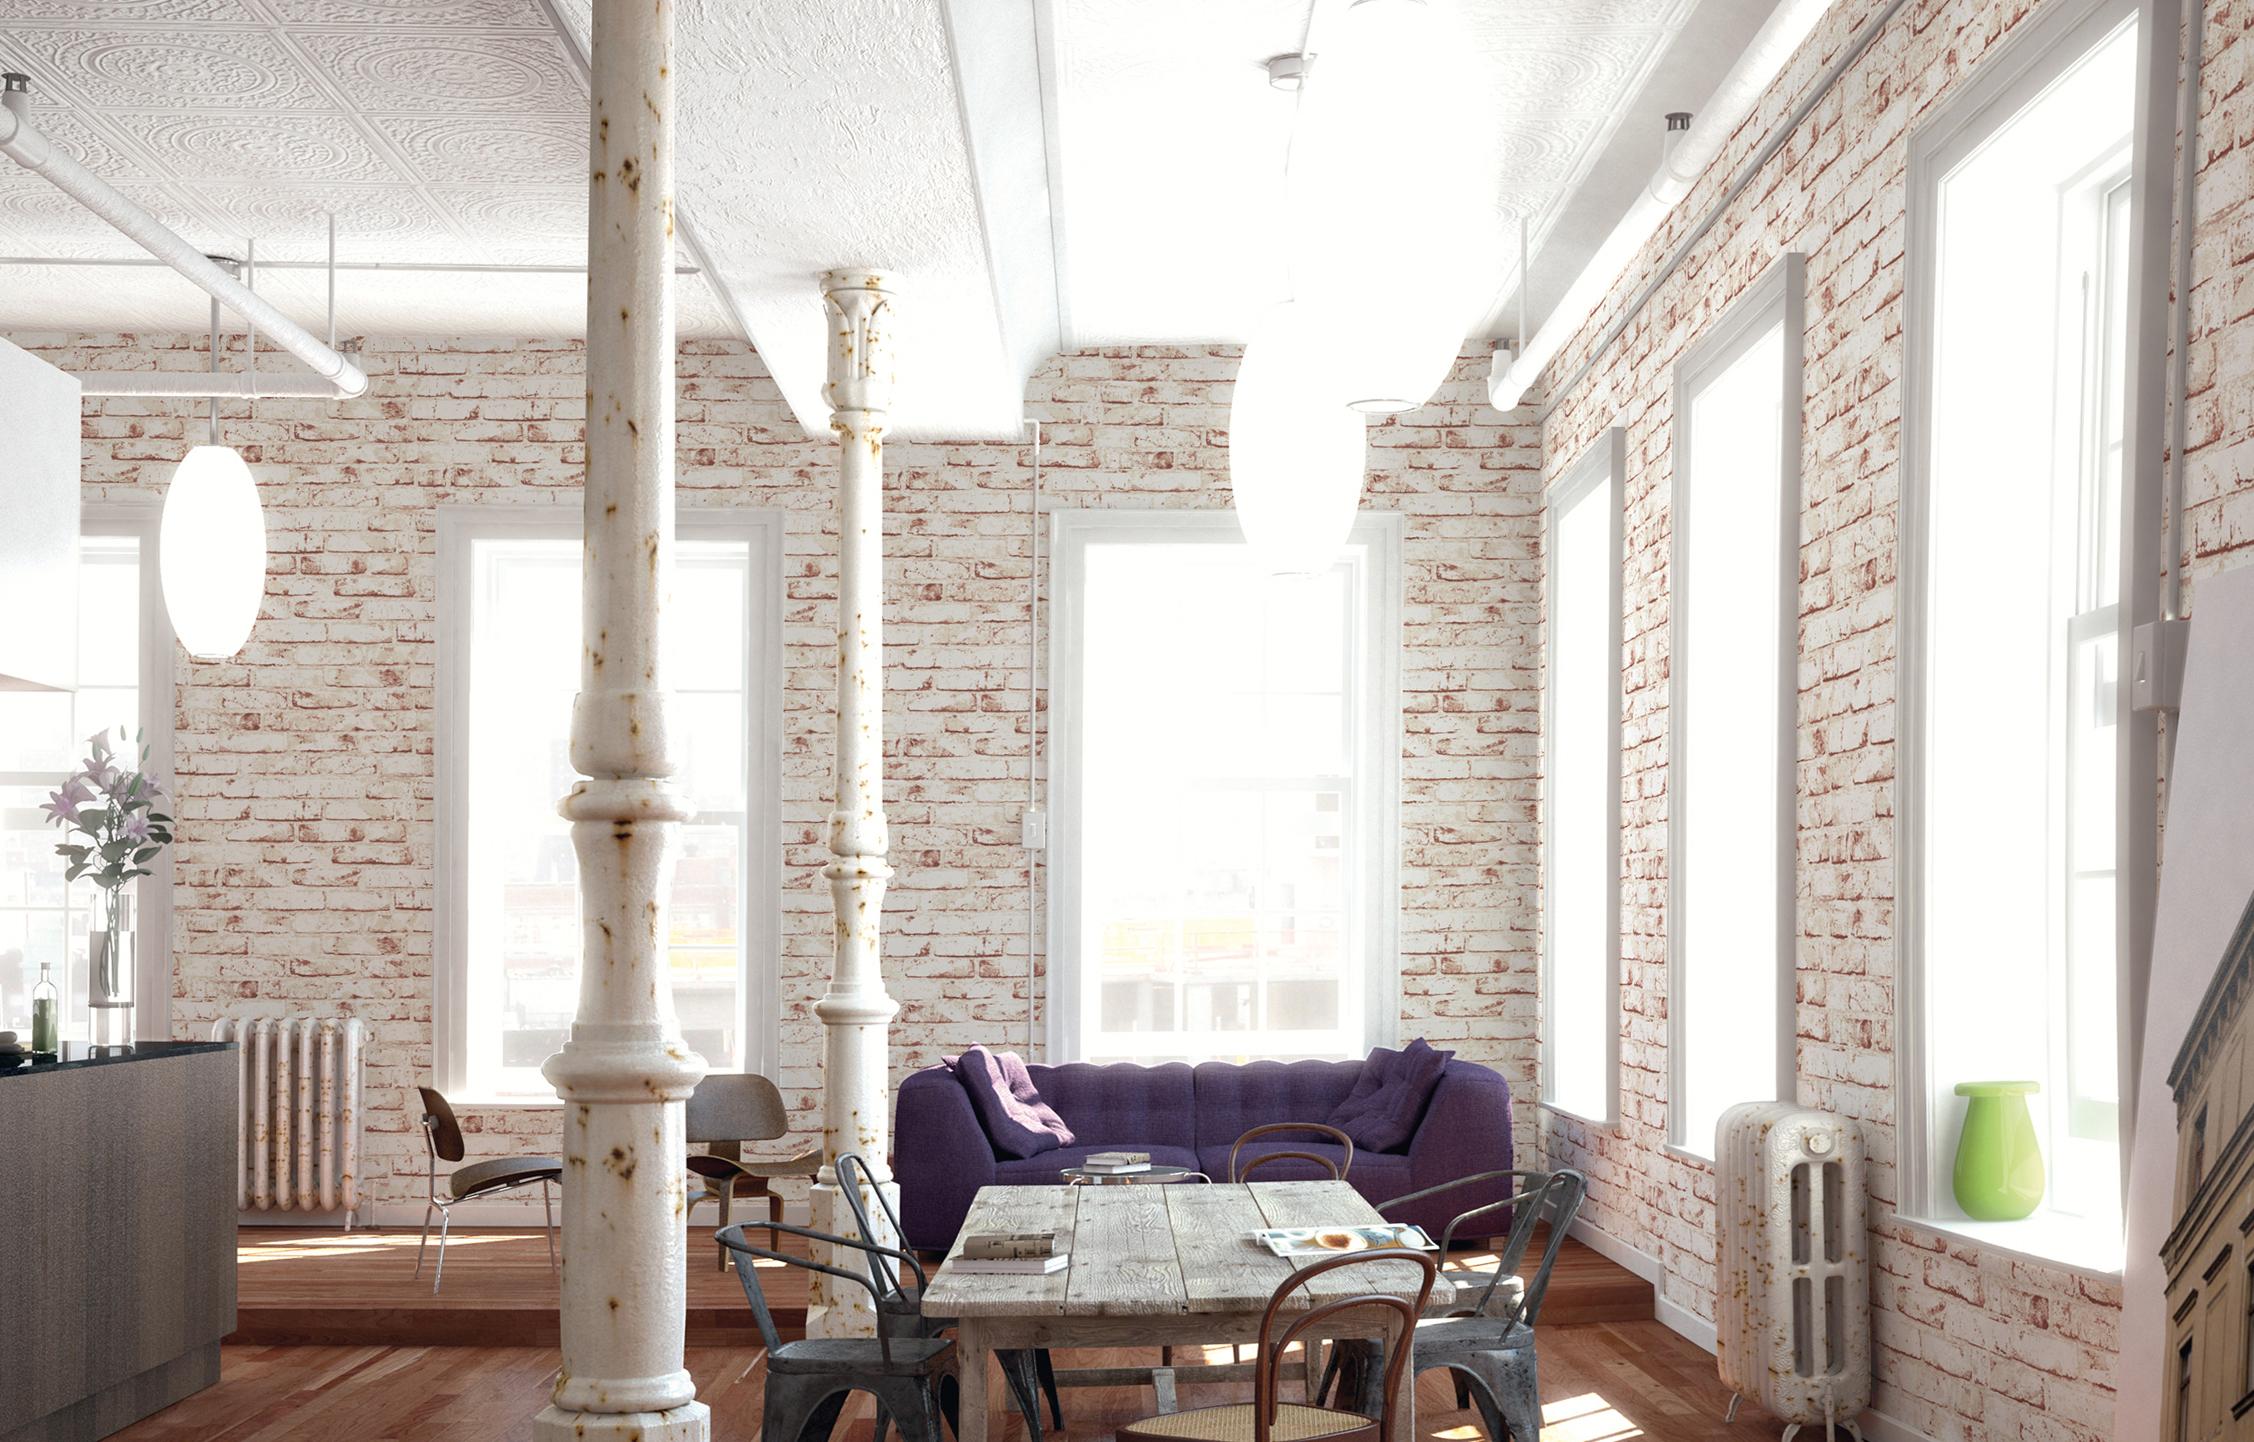 Wohnzimmer im coolen Vintage-Look #vintage #esstisch #shabbychic #sofa #industriedesign #esszimmerstuhl #rustikal ©A.S. Création